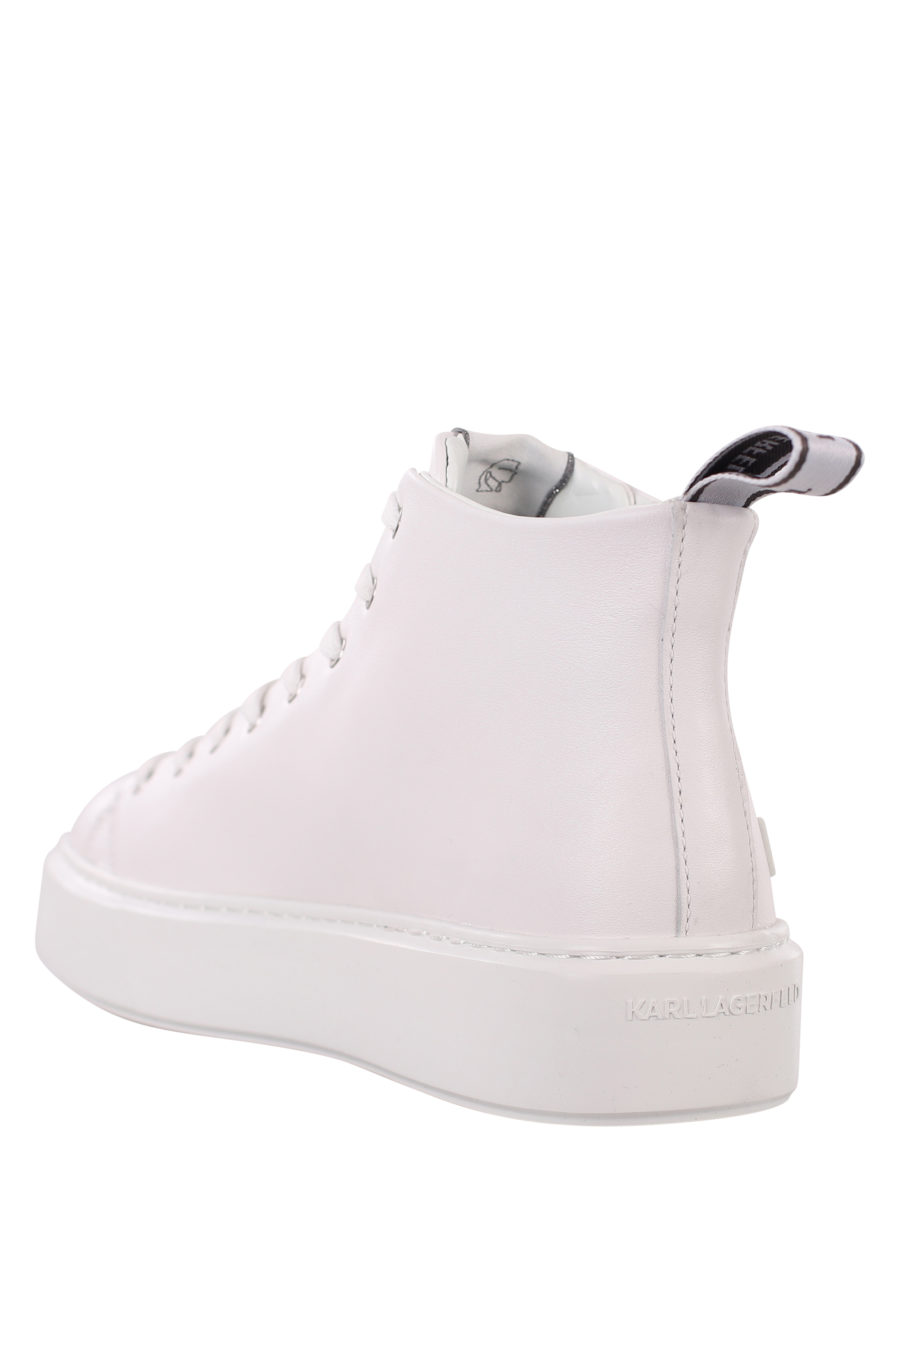 Zapatillas blancas estilo botin con maxilogo blanco de goma - IMG 0388